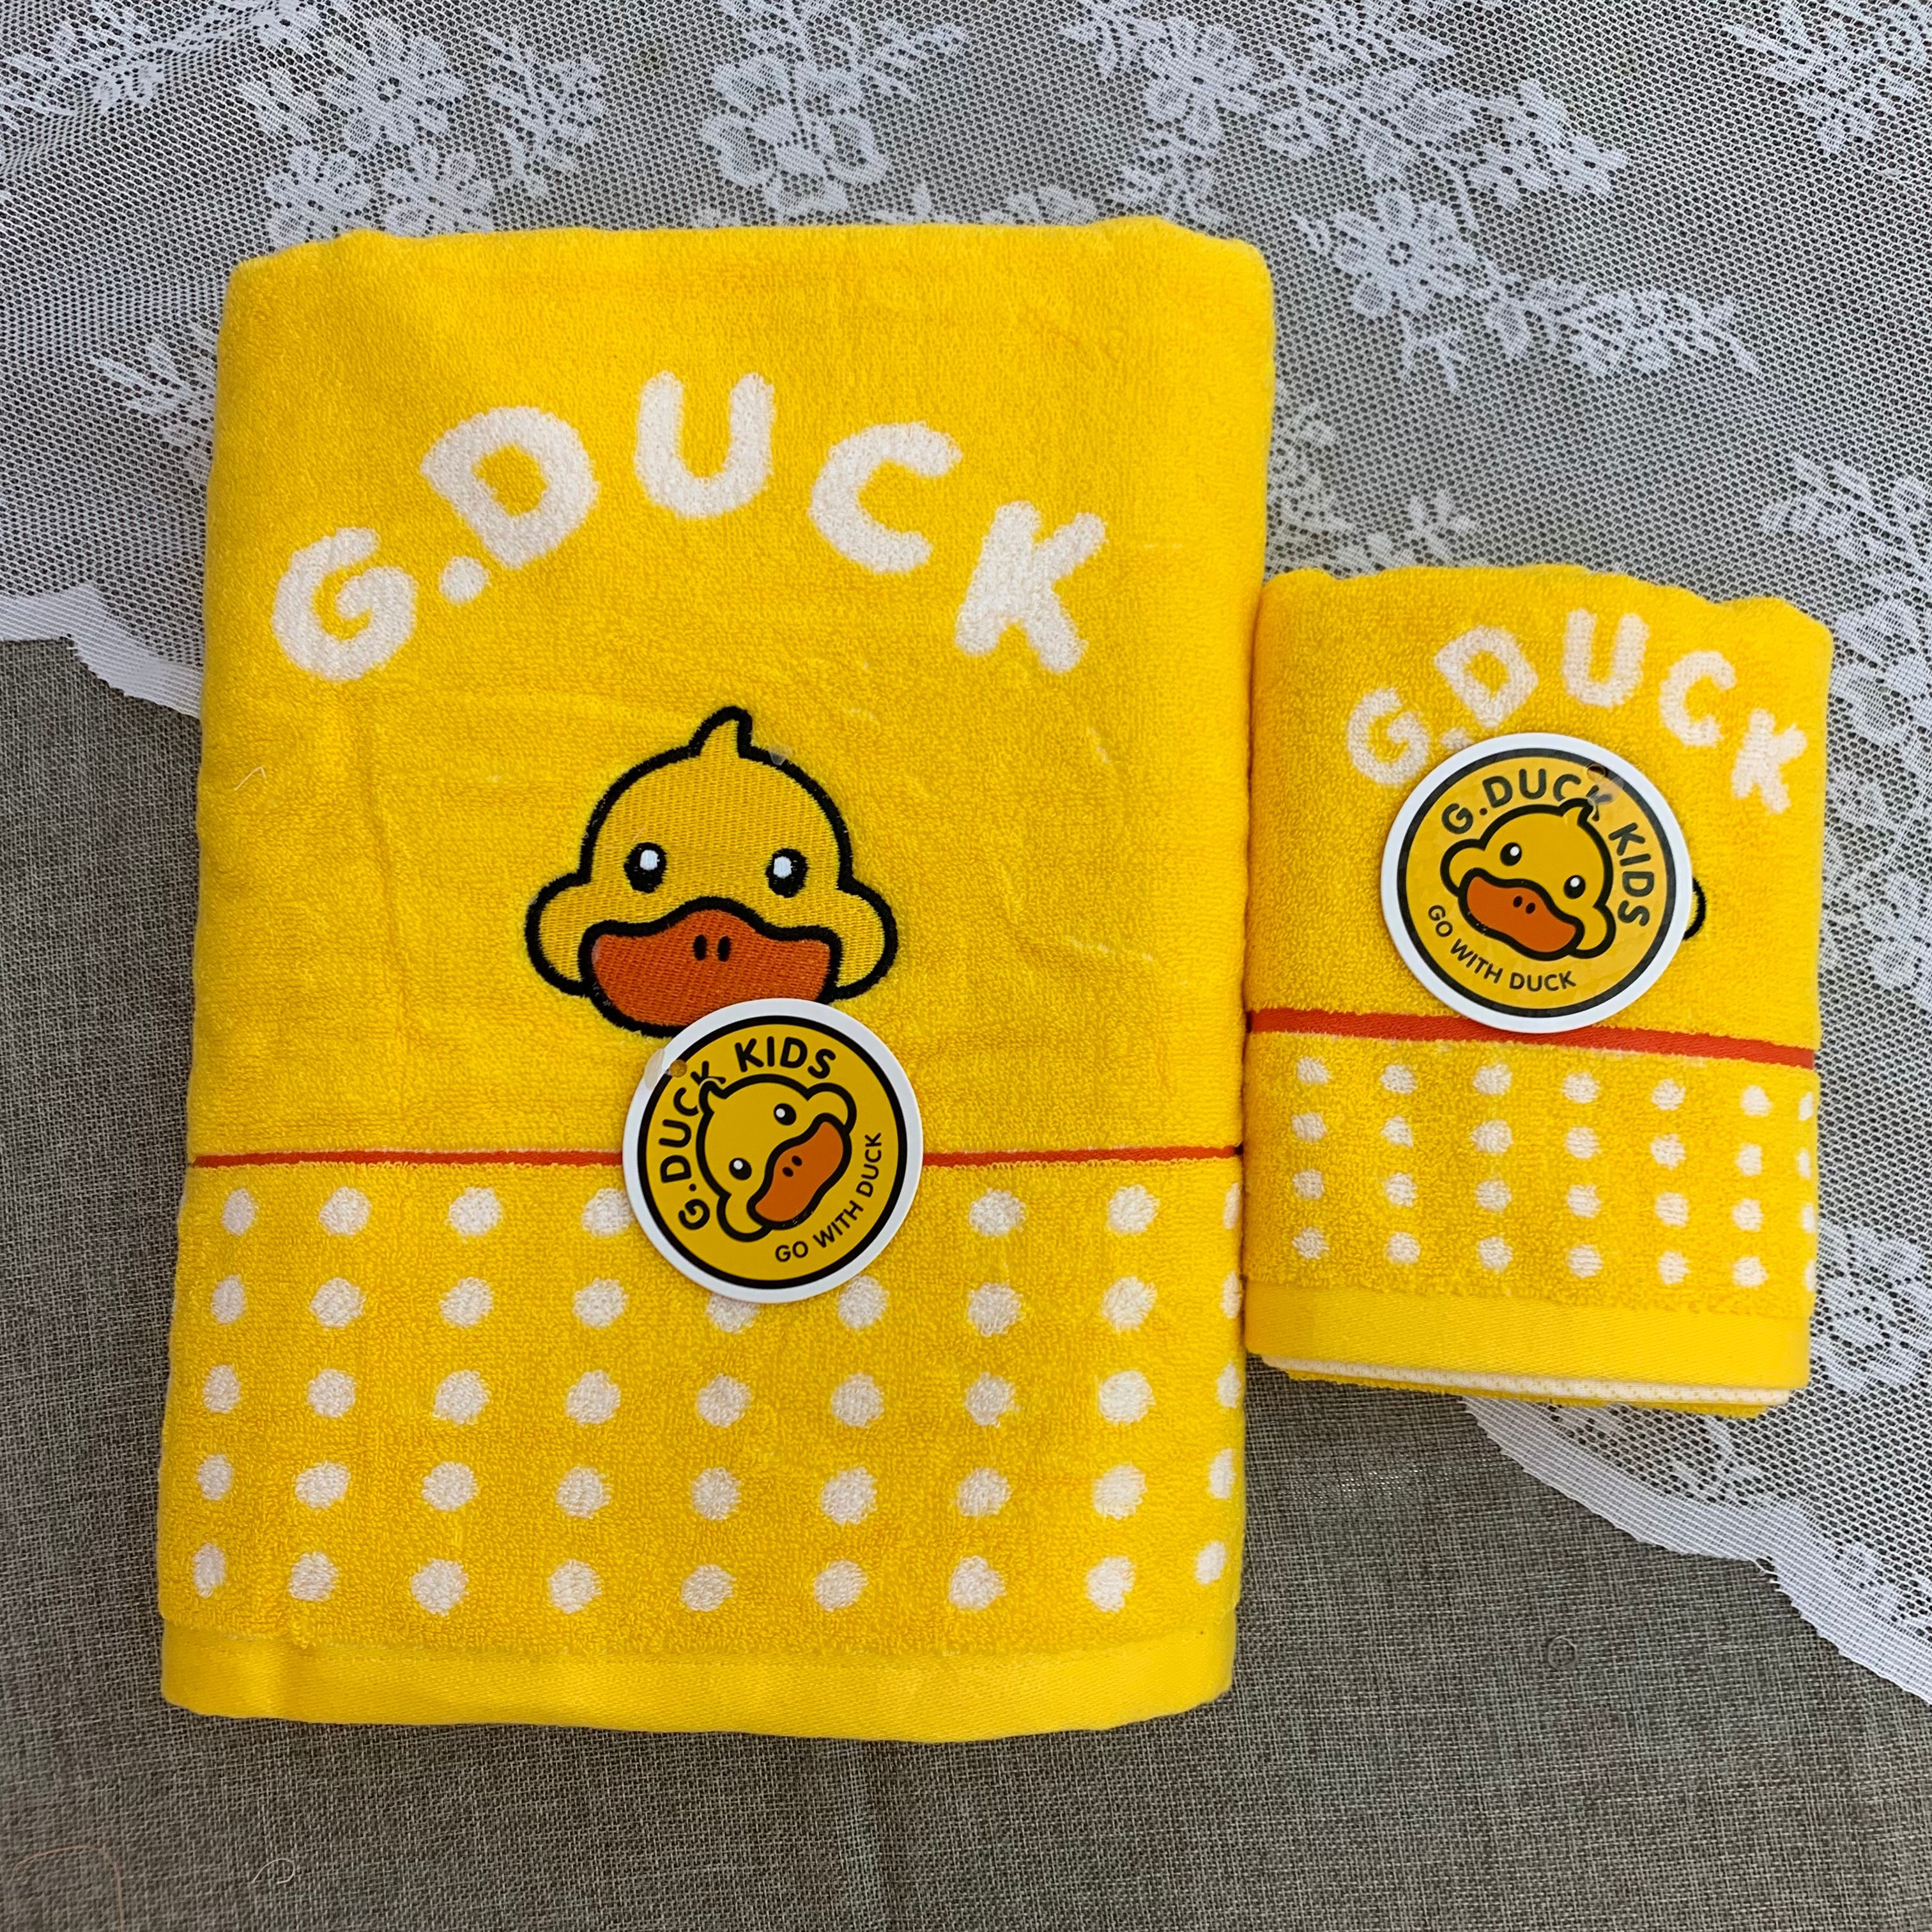 G.DUCK小黄鸭系列浴巾毛巾两条装组合 秒杀专用款式详情图4